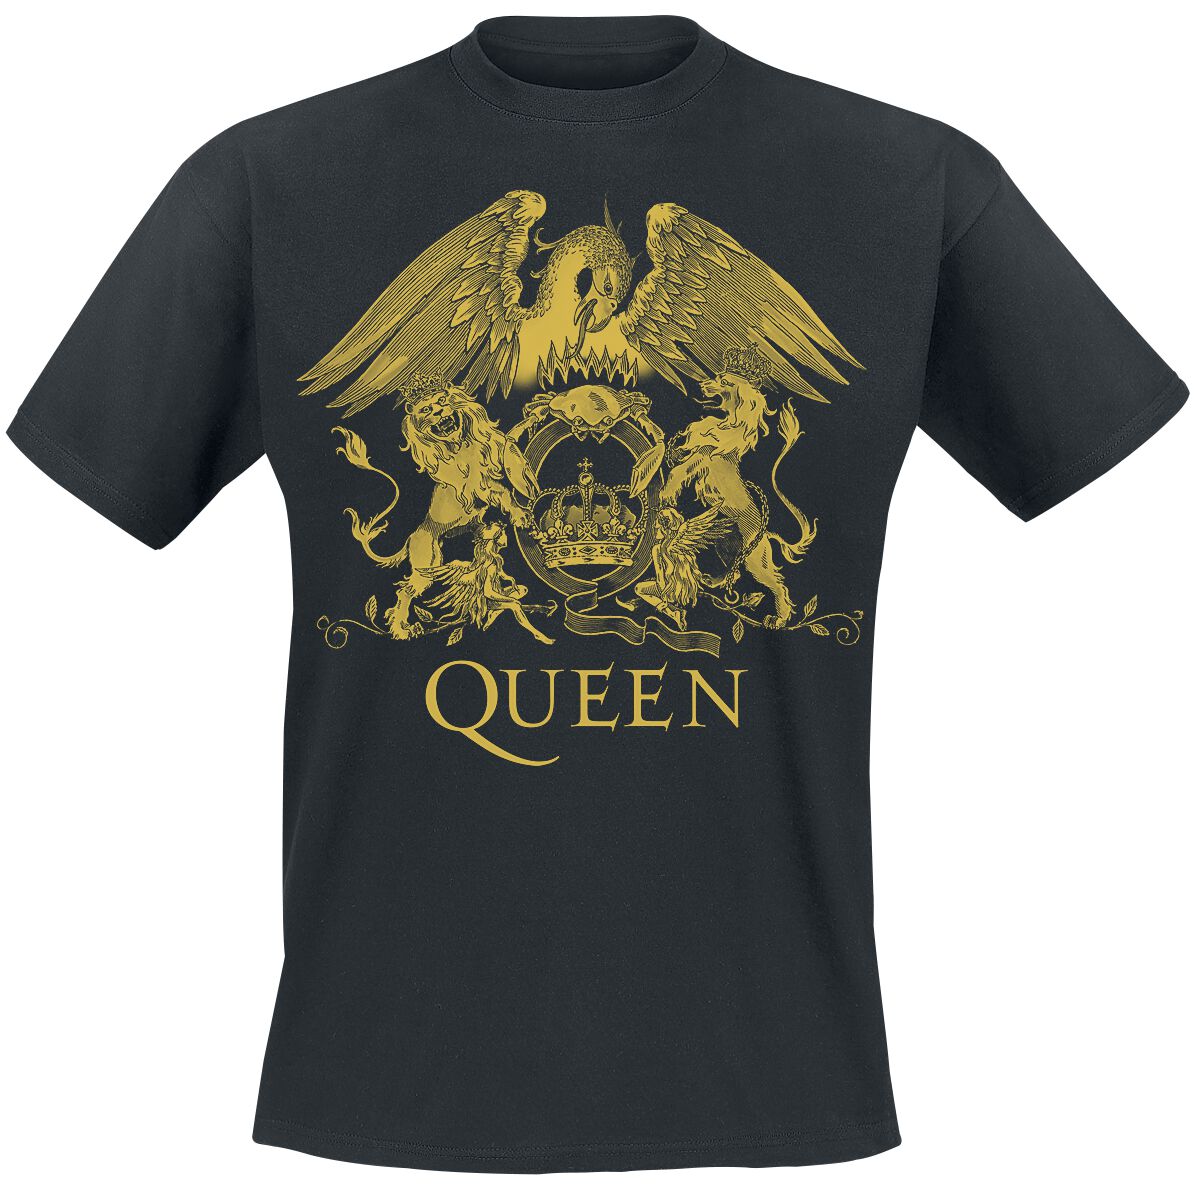 Queen T-Shirt - Classic Crest - S bis 3XL - für Männer - Größe L - schwarz  - Lizenziertes Merchandise!